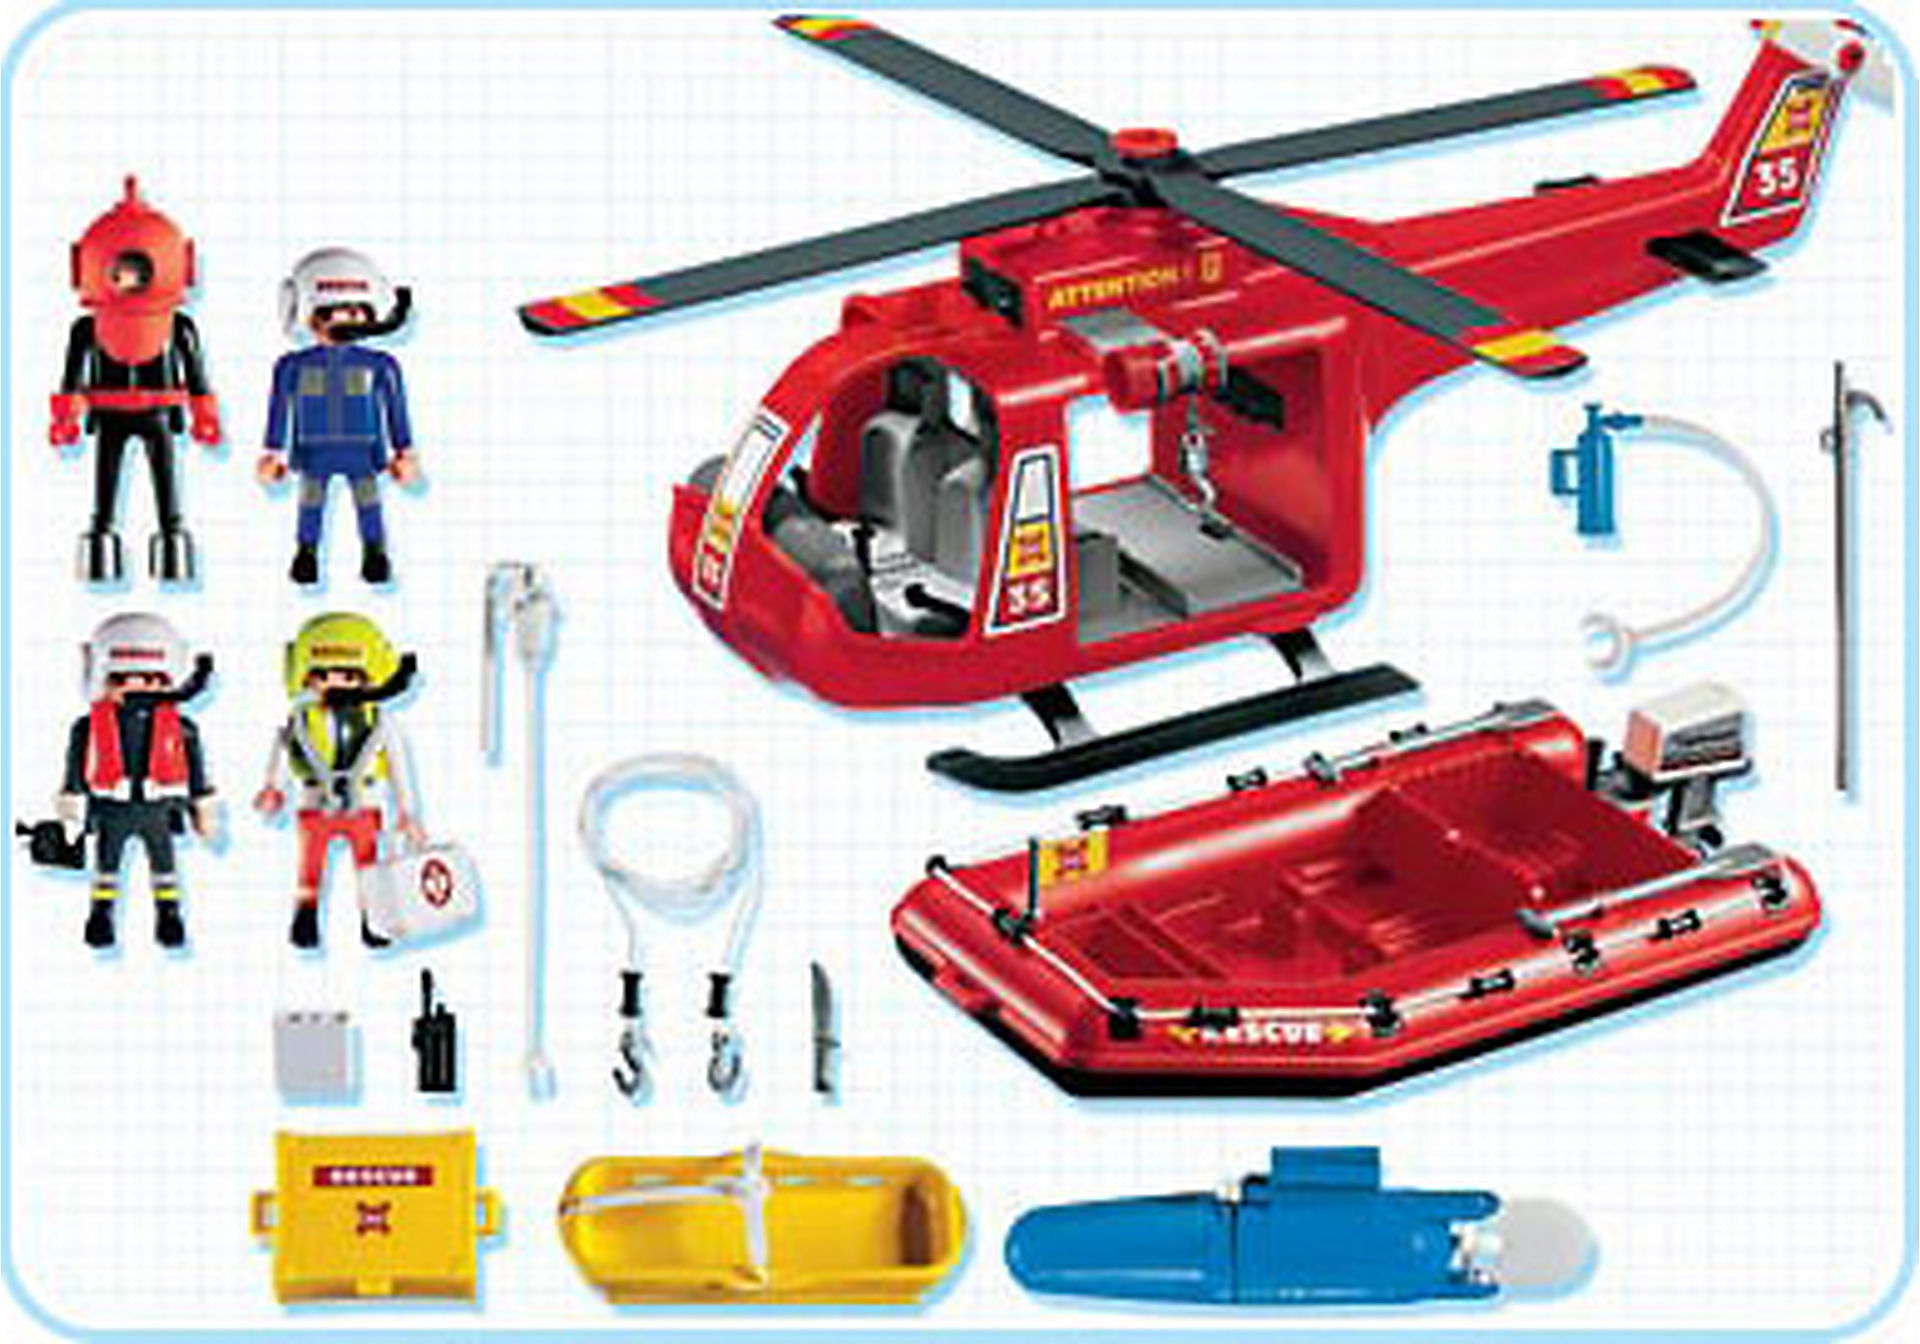 Спасательные машинки. Плеймобил пожарный вертолет. Вертолет спасательный Плеймобил. Плеймобиль 4428. Набор Плеймобиль спасательный вертолет.